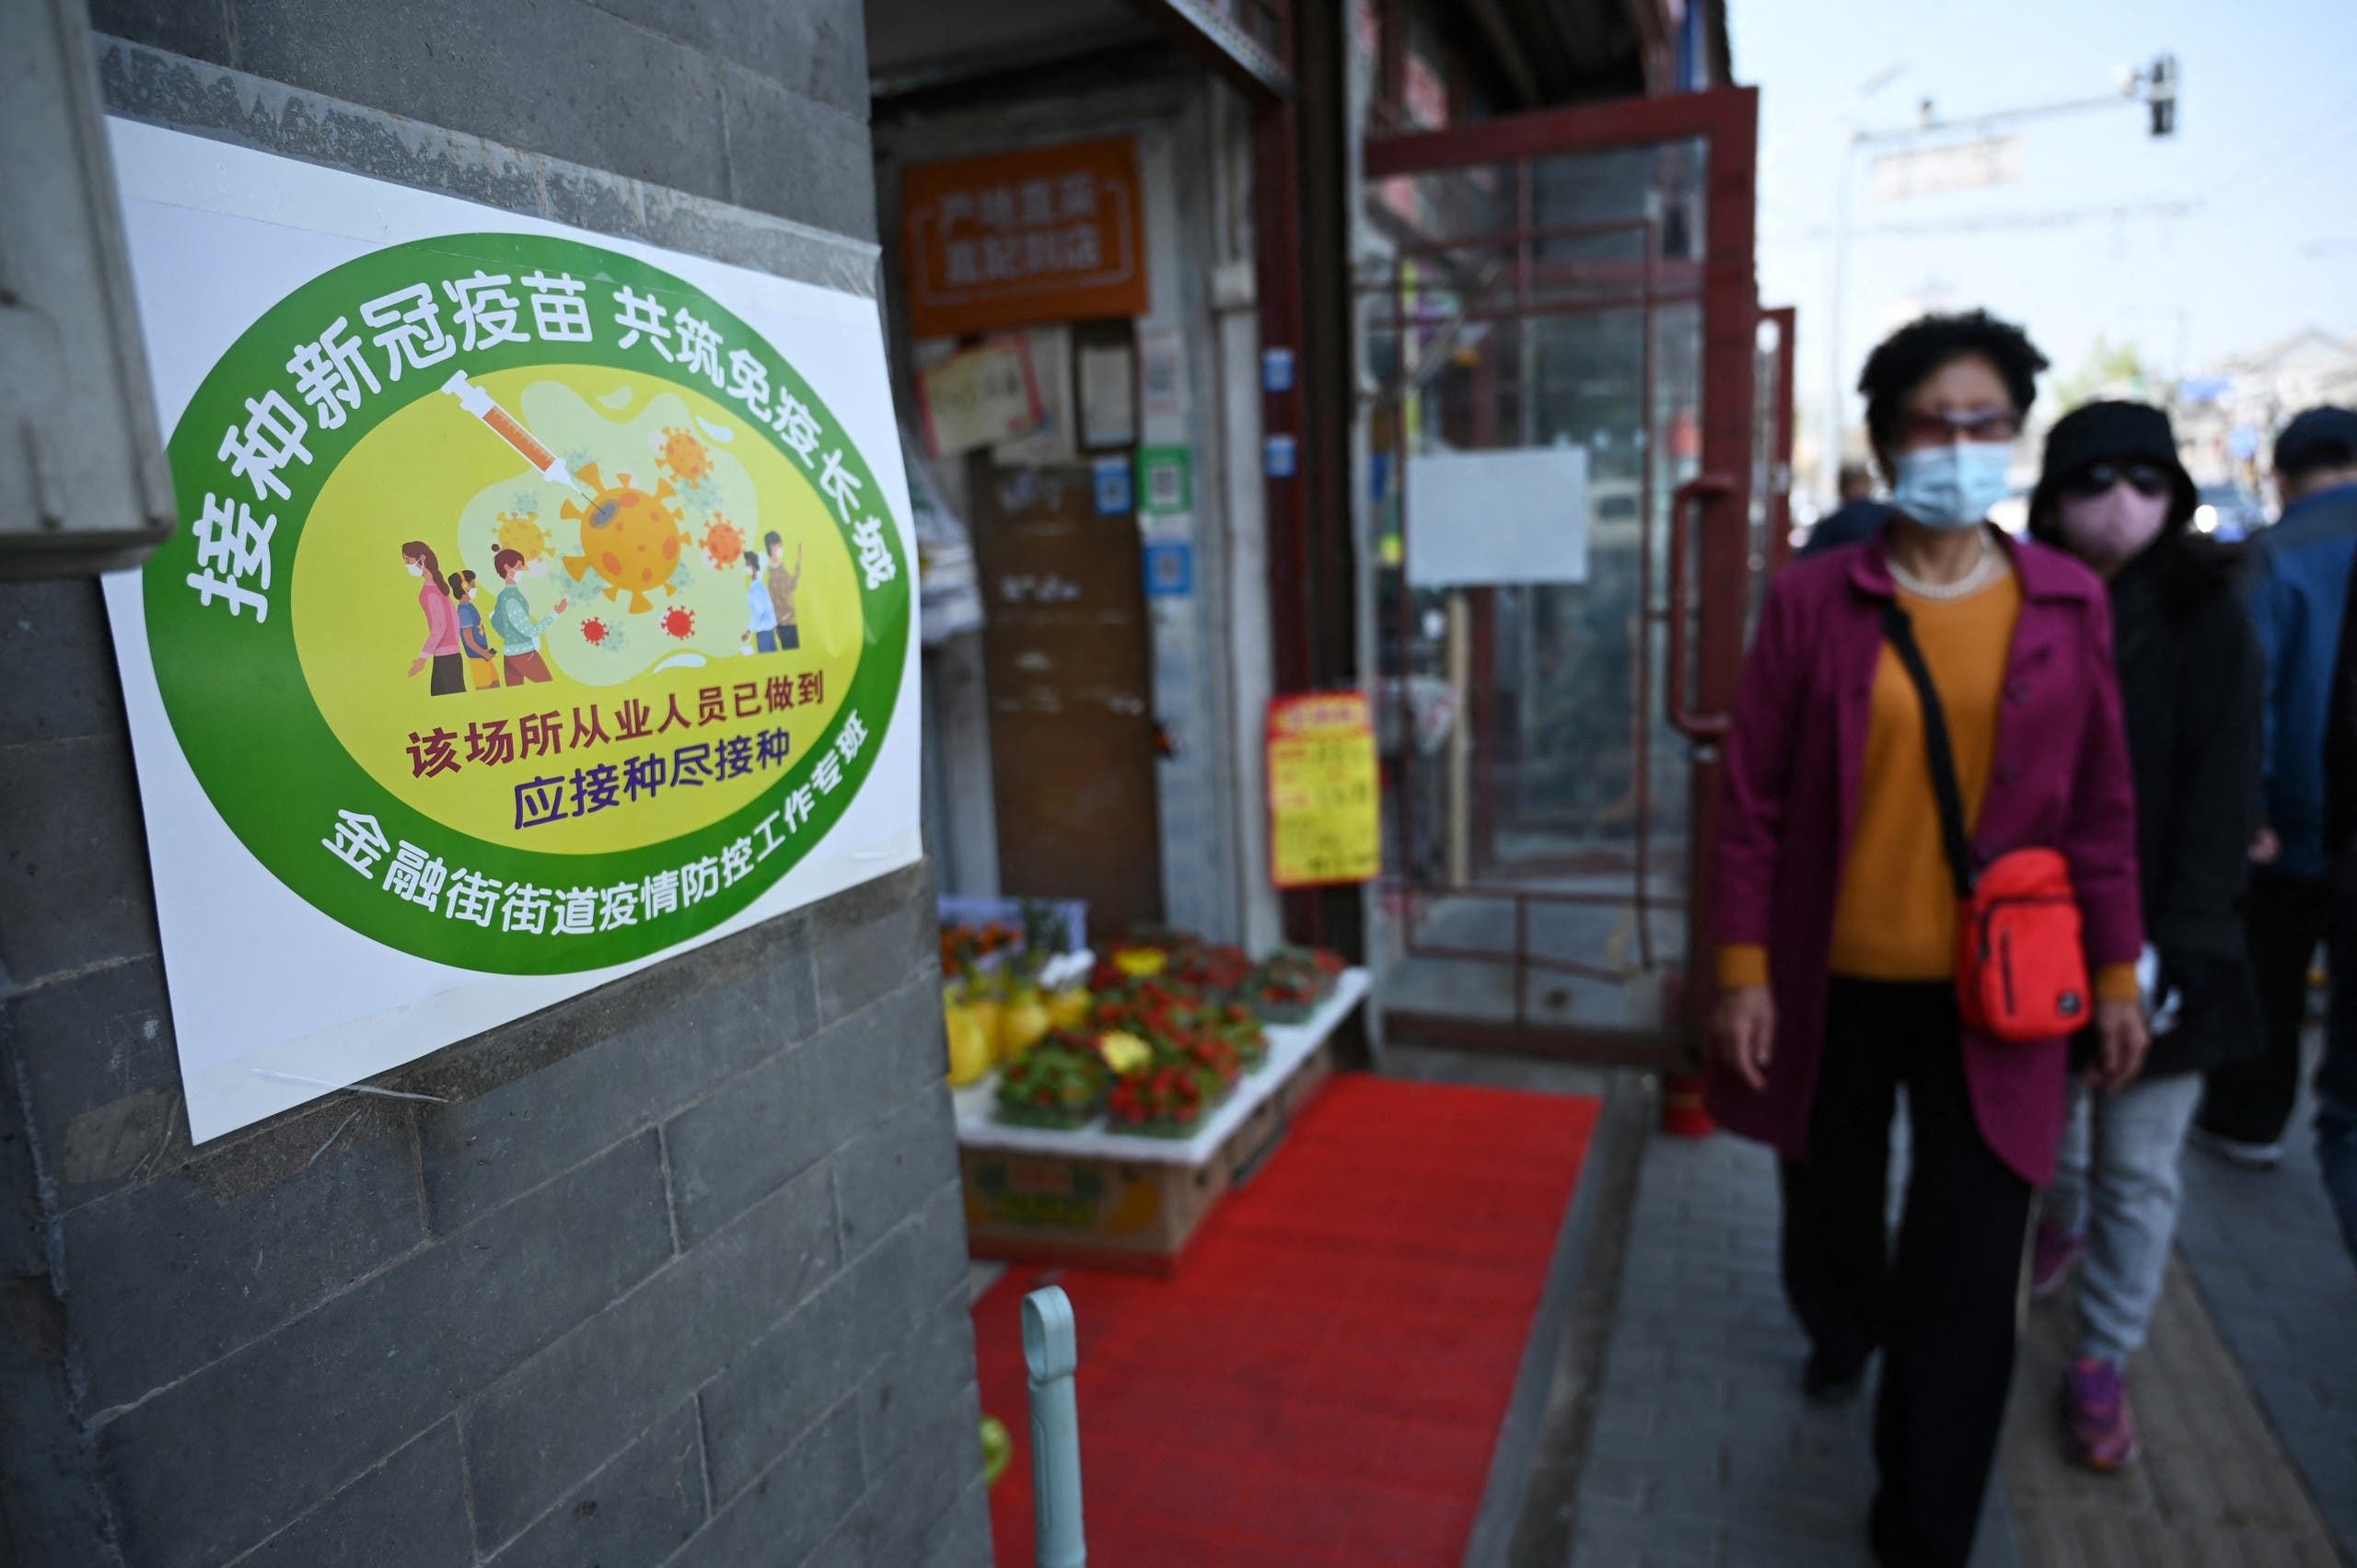 علامة خضراء على باب متجر خضار في بكين تشير إلى أن معظم العاملين فيه تلقوا اللقاح